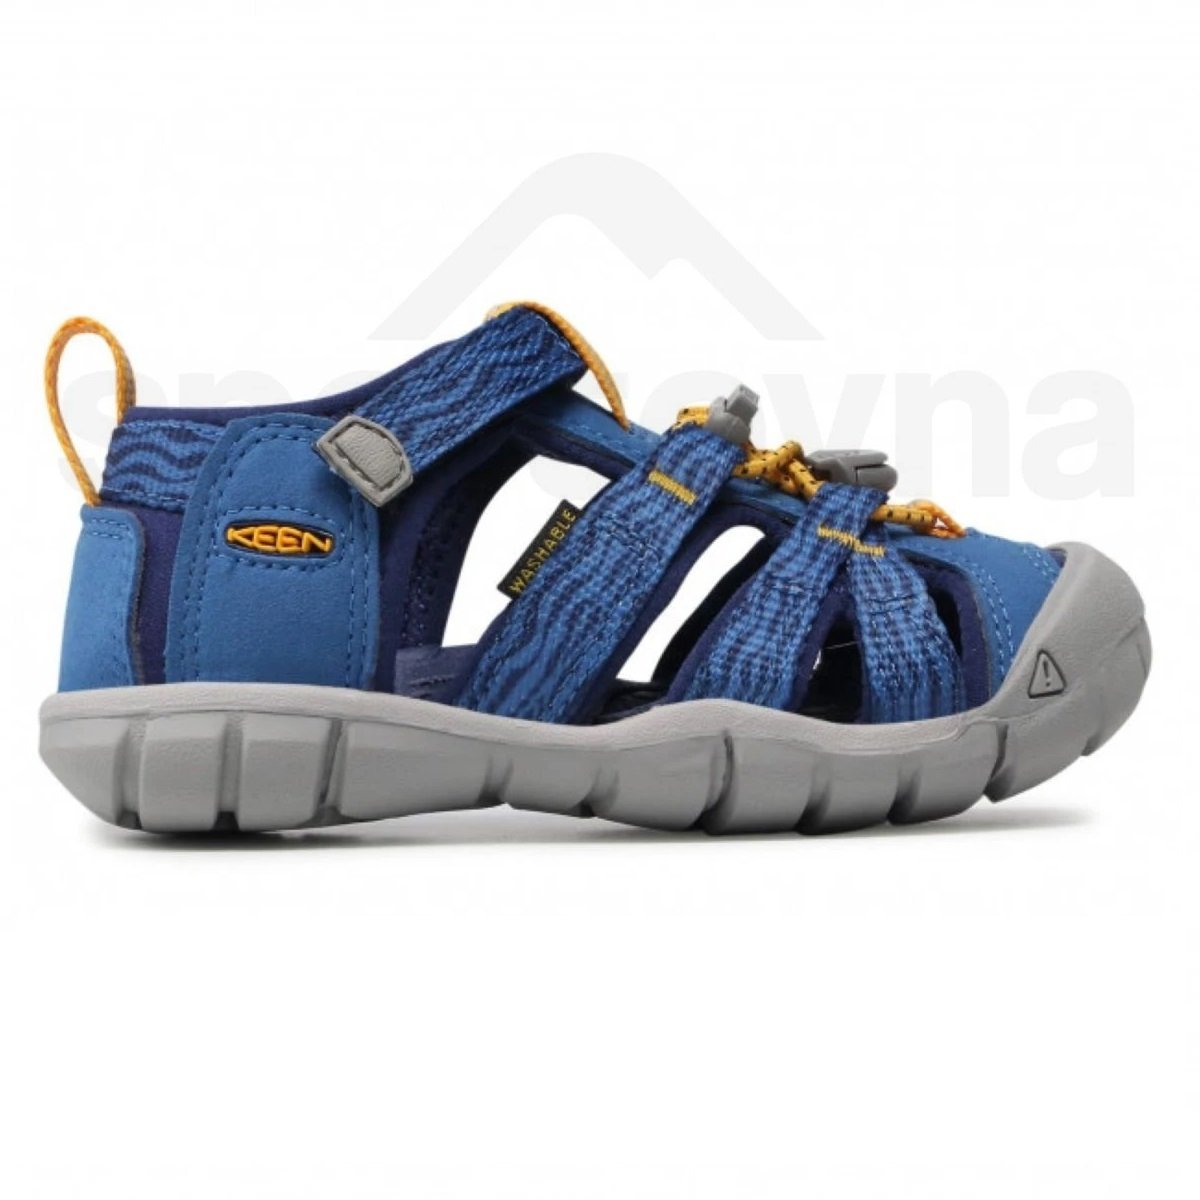 Sandále Keen SEACAMP II CNX J - modrá/oranžová